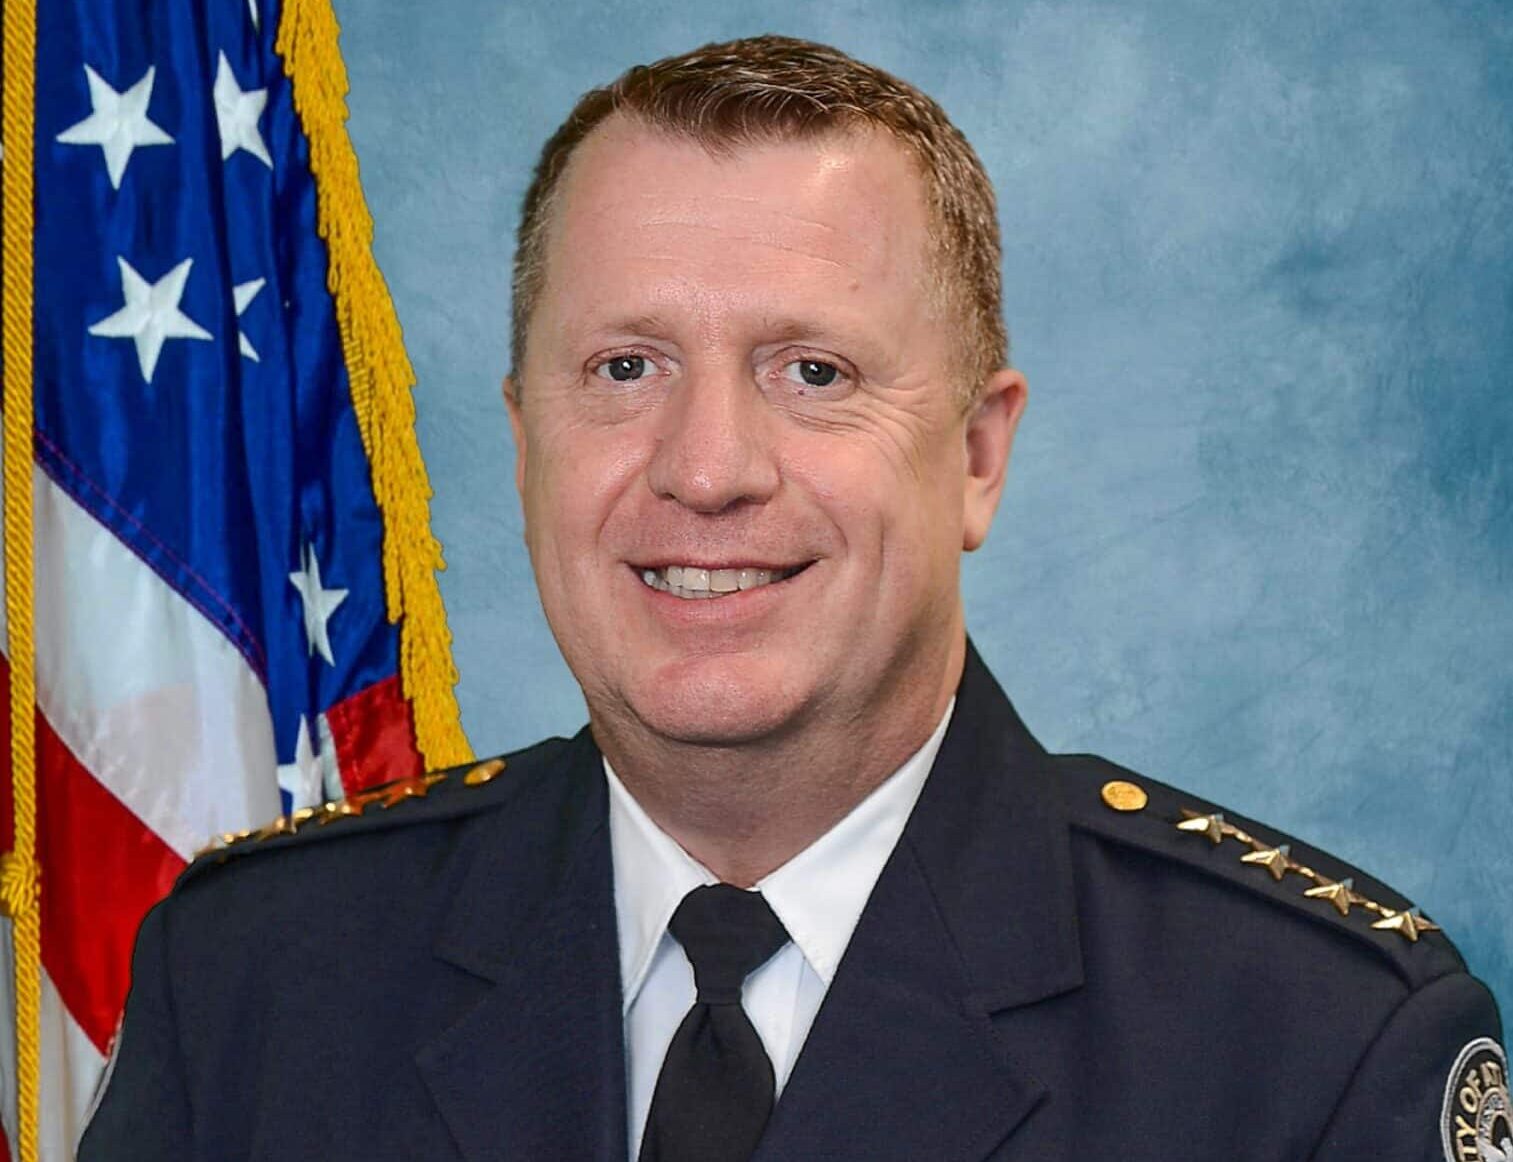 Meet Atlanta's new police chief Darin Schierbaum